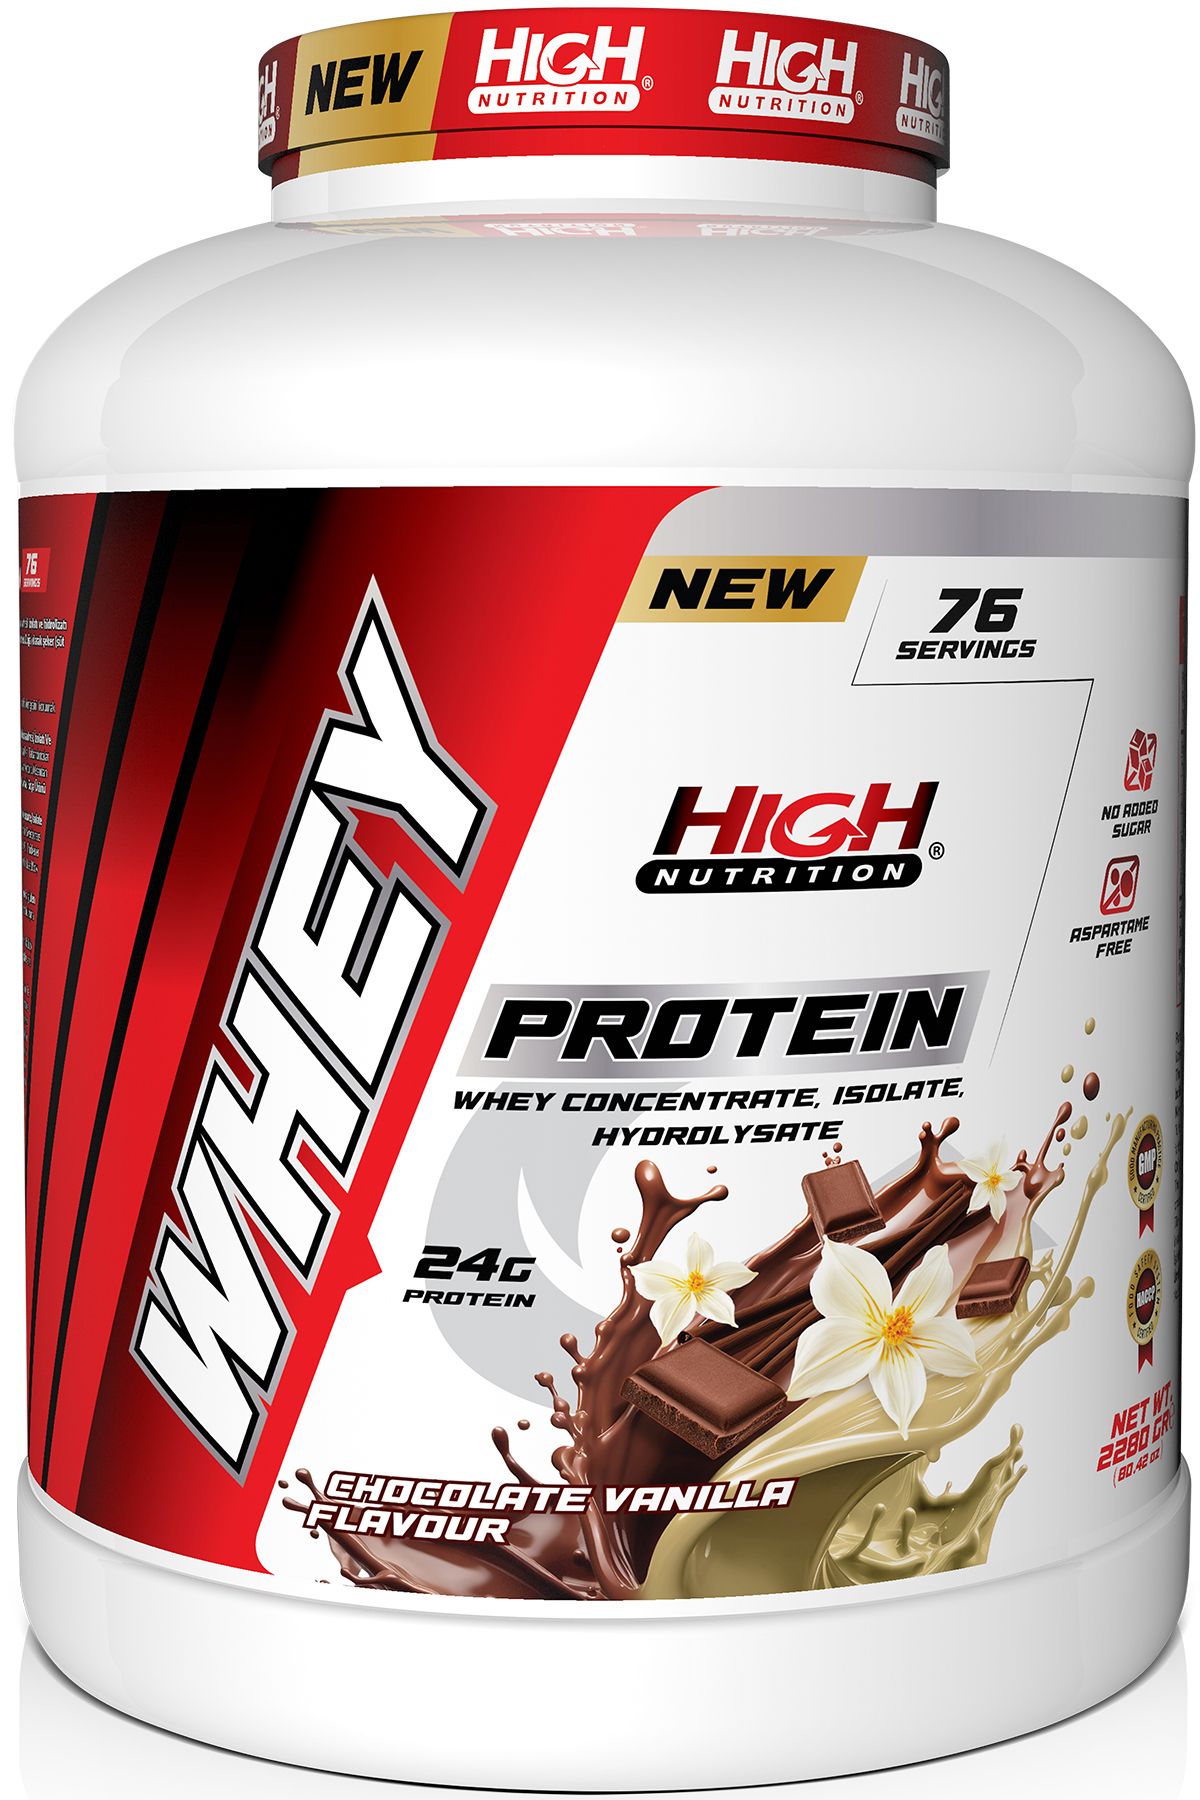 High Nutrition Protein Tozu 2280 Gr Çikolata Vanilya Aromalı Whey Protein 24 Gram Protein 76 Servis